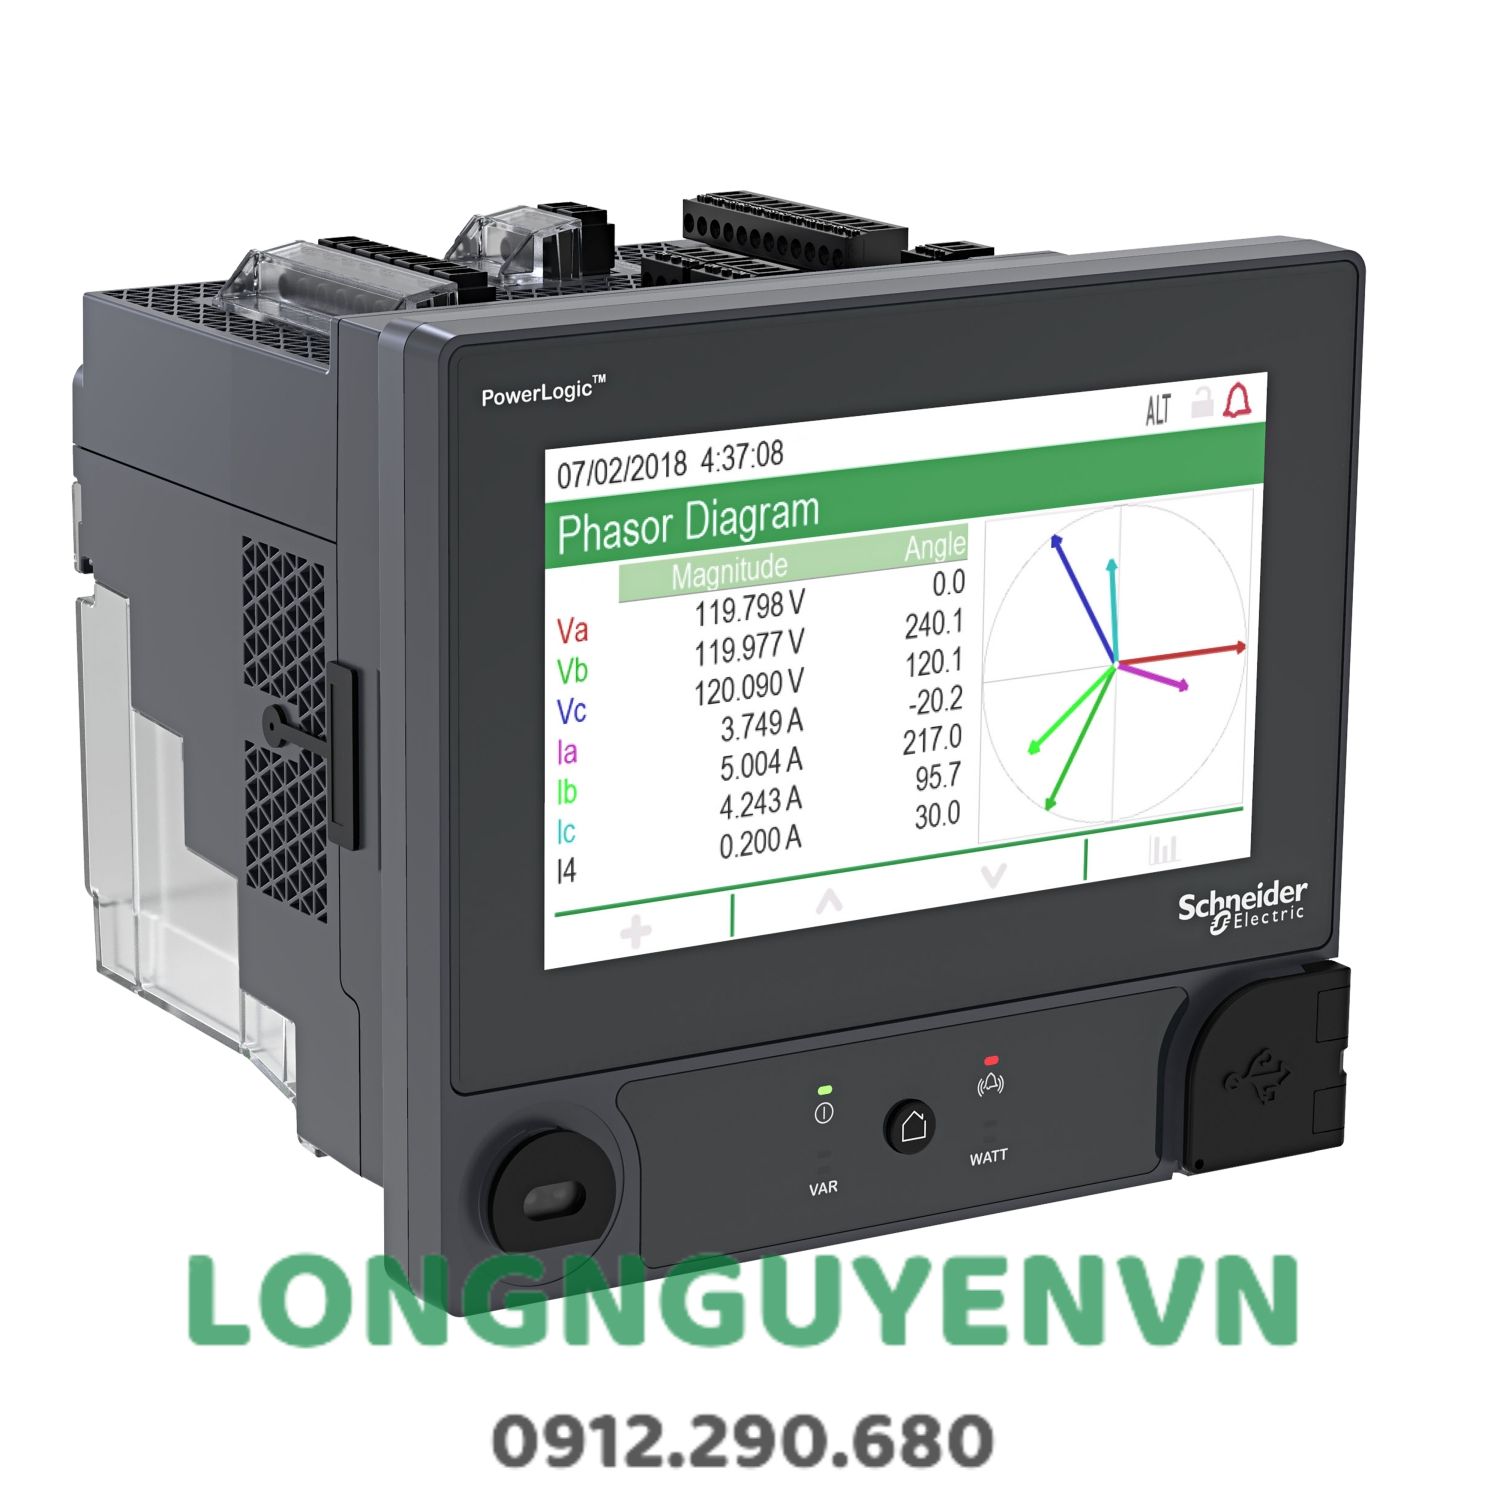 Đồng hồ PowerLogic™ ION9000T, HSTC, ngàm DIN, màn hình 192 mm, bộ chuyển đổi B2B, bộ CTNH